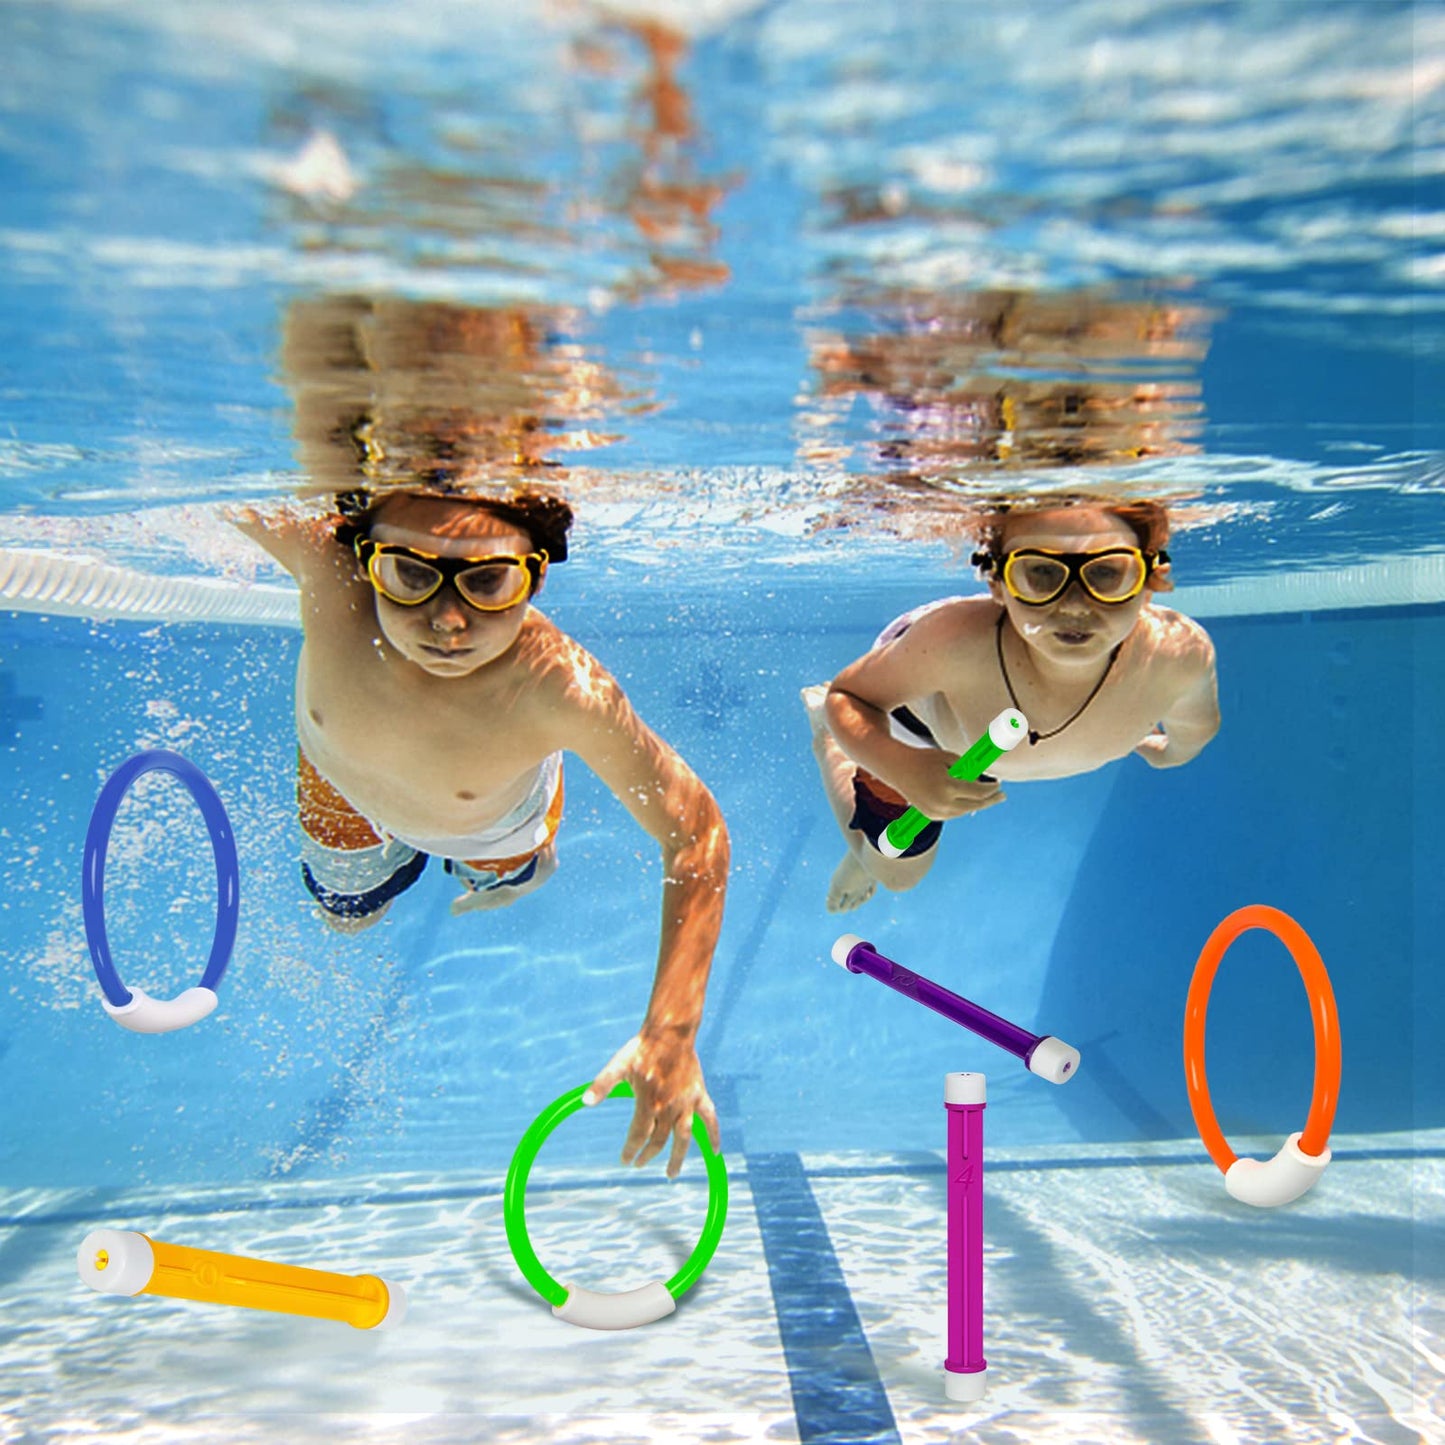 Jouets de piscine sous-marine, piscine d'entraînement anneaux de plongée jouets de natation anneaux de plongée jouets de plongée ensemble cadeau jouets de piscine pour enfants pour jeux de jouets aquatiques amusants